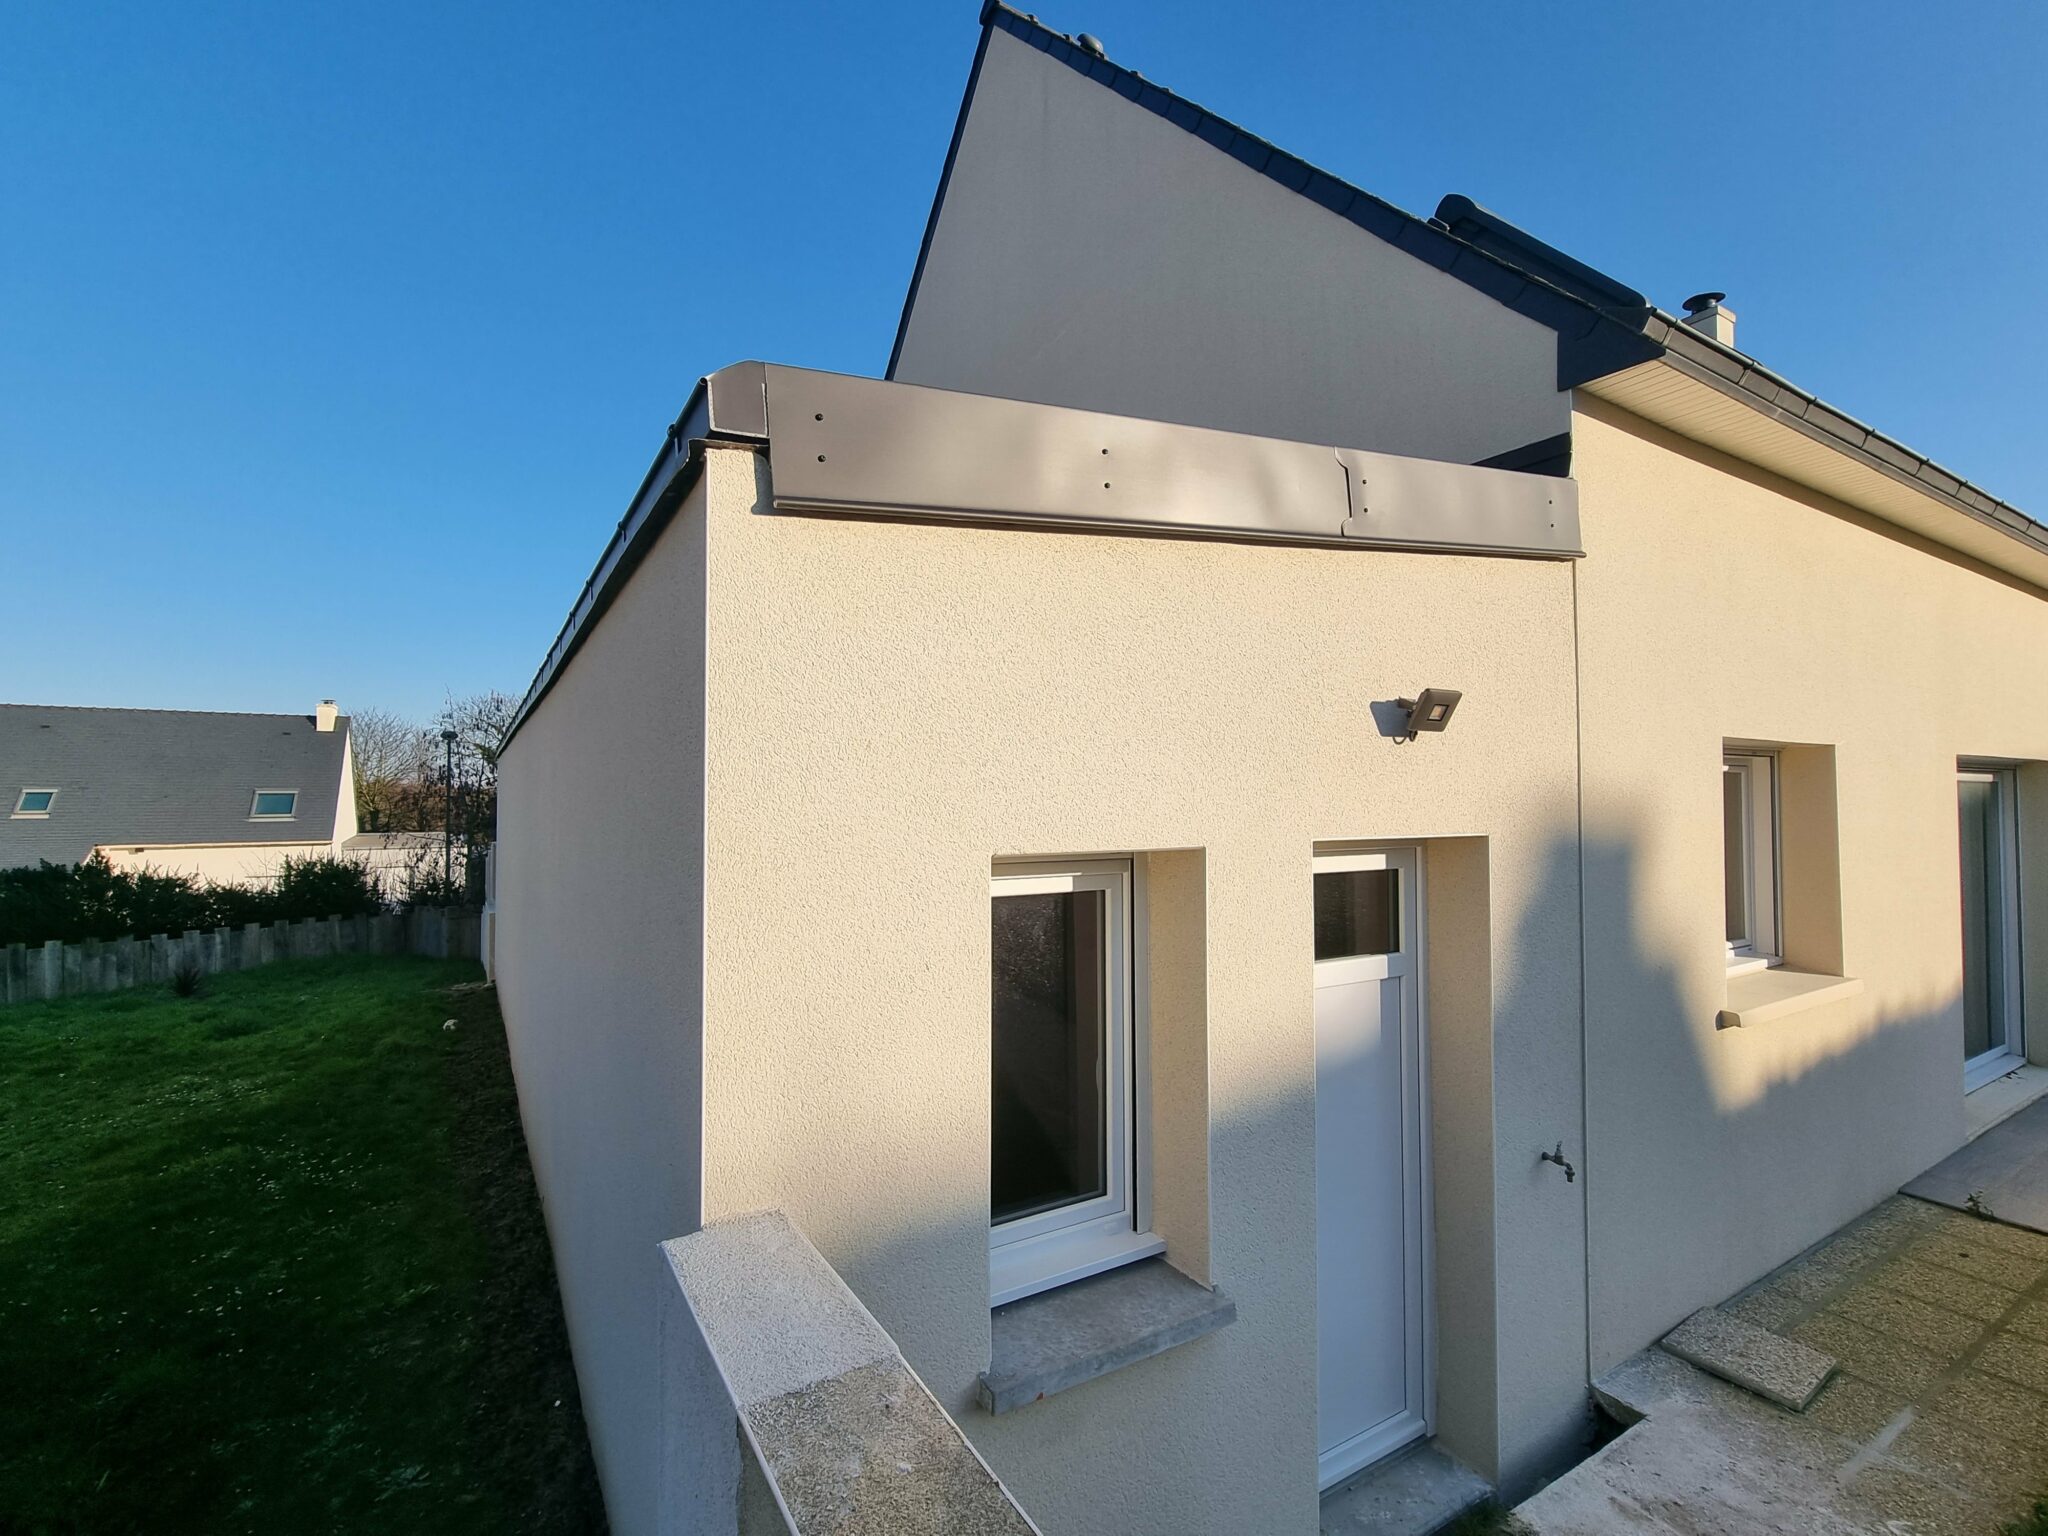 Extension de maison pour créer un garage à Saint-Renan (29) - vue de derrière